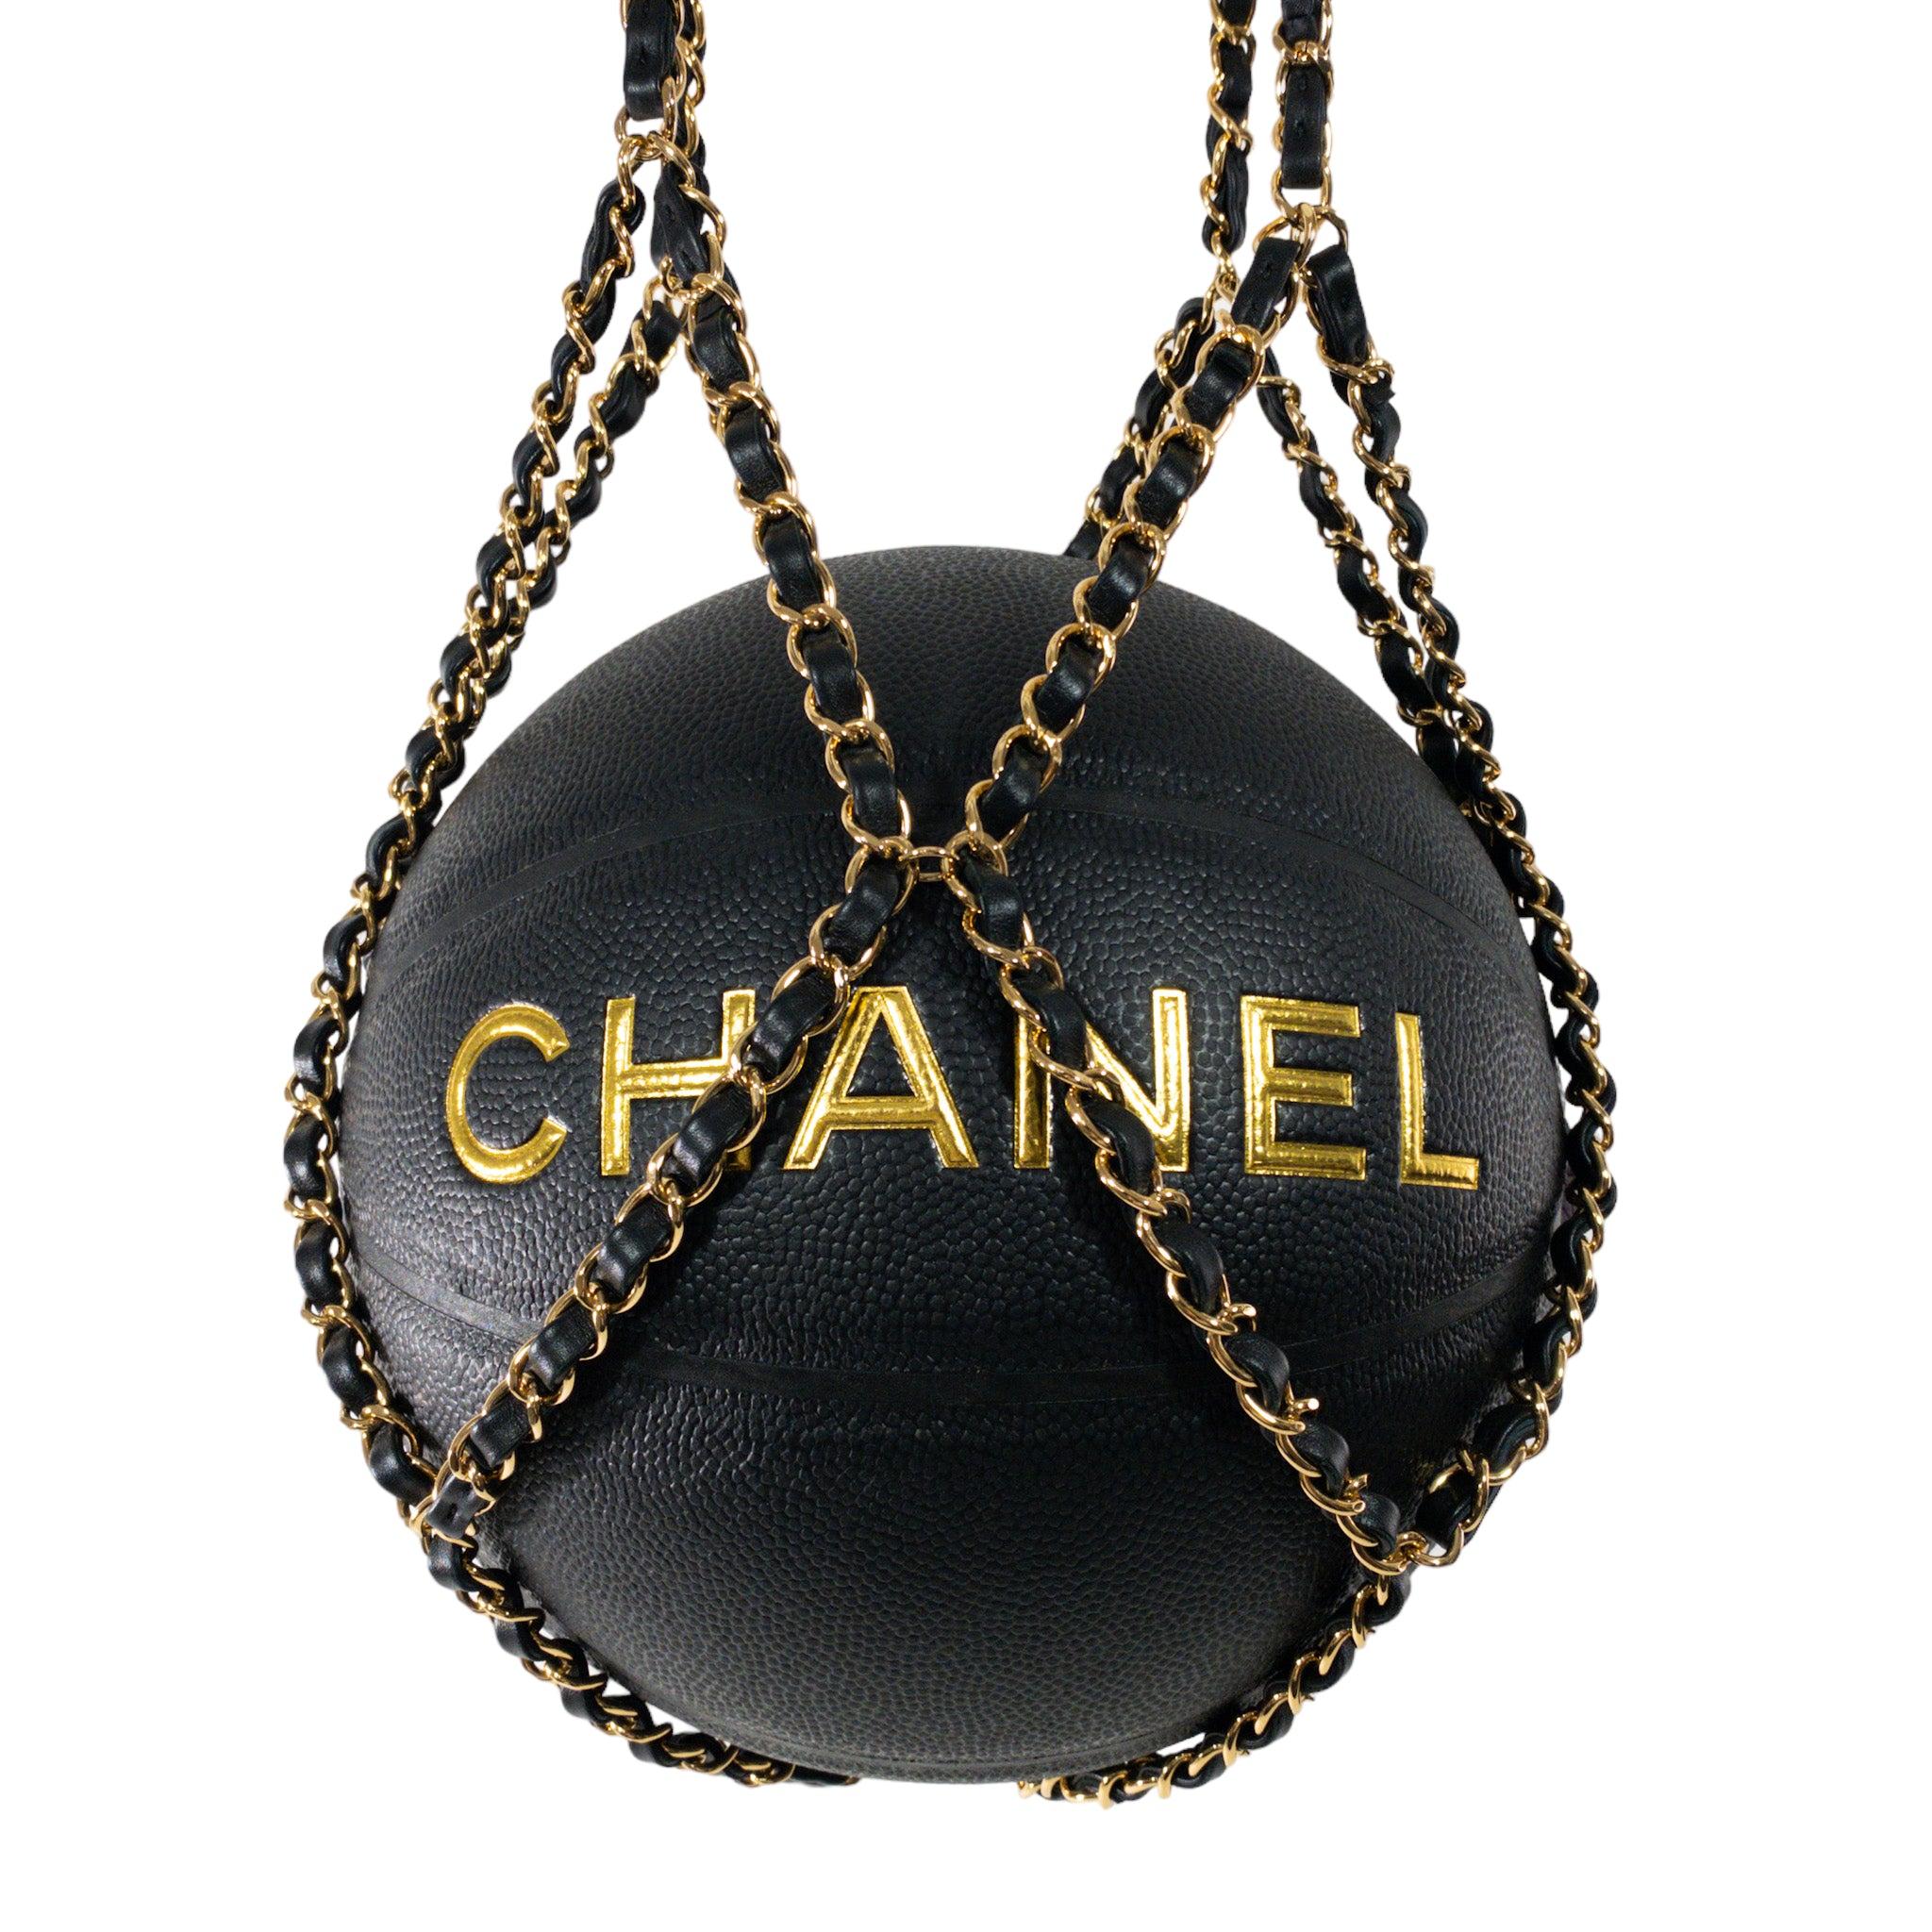 Édition limitée basket-ball avec harnais en chaîne de Chanel, 2019

Il s'agit d'une authentique basket Chanel Collector's edition avec harnais en chaîne tissée. Poignées en cuir sur chaînettes. Extérieur noir avec 